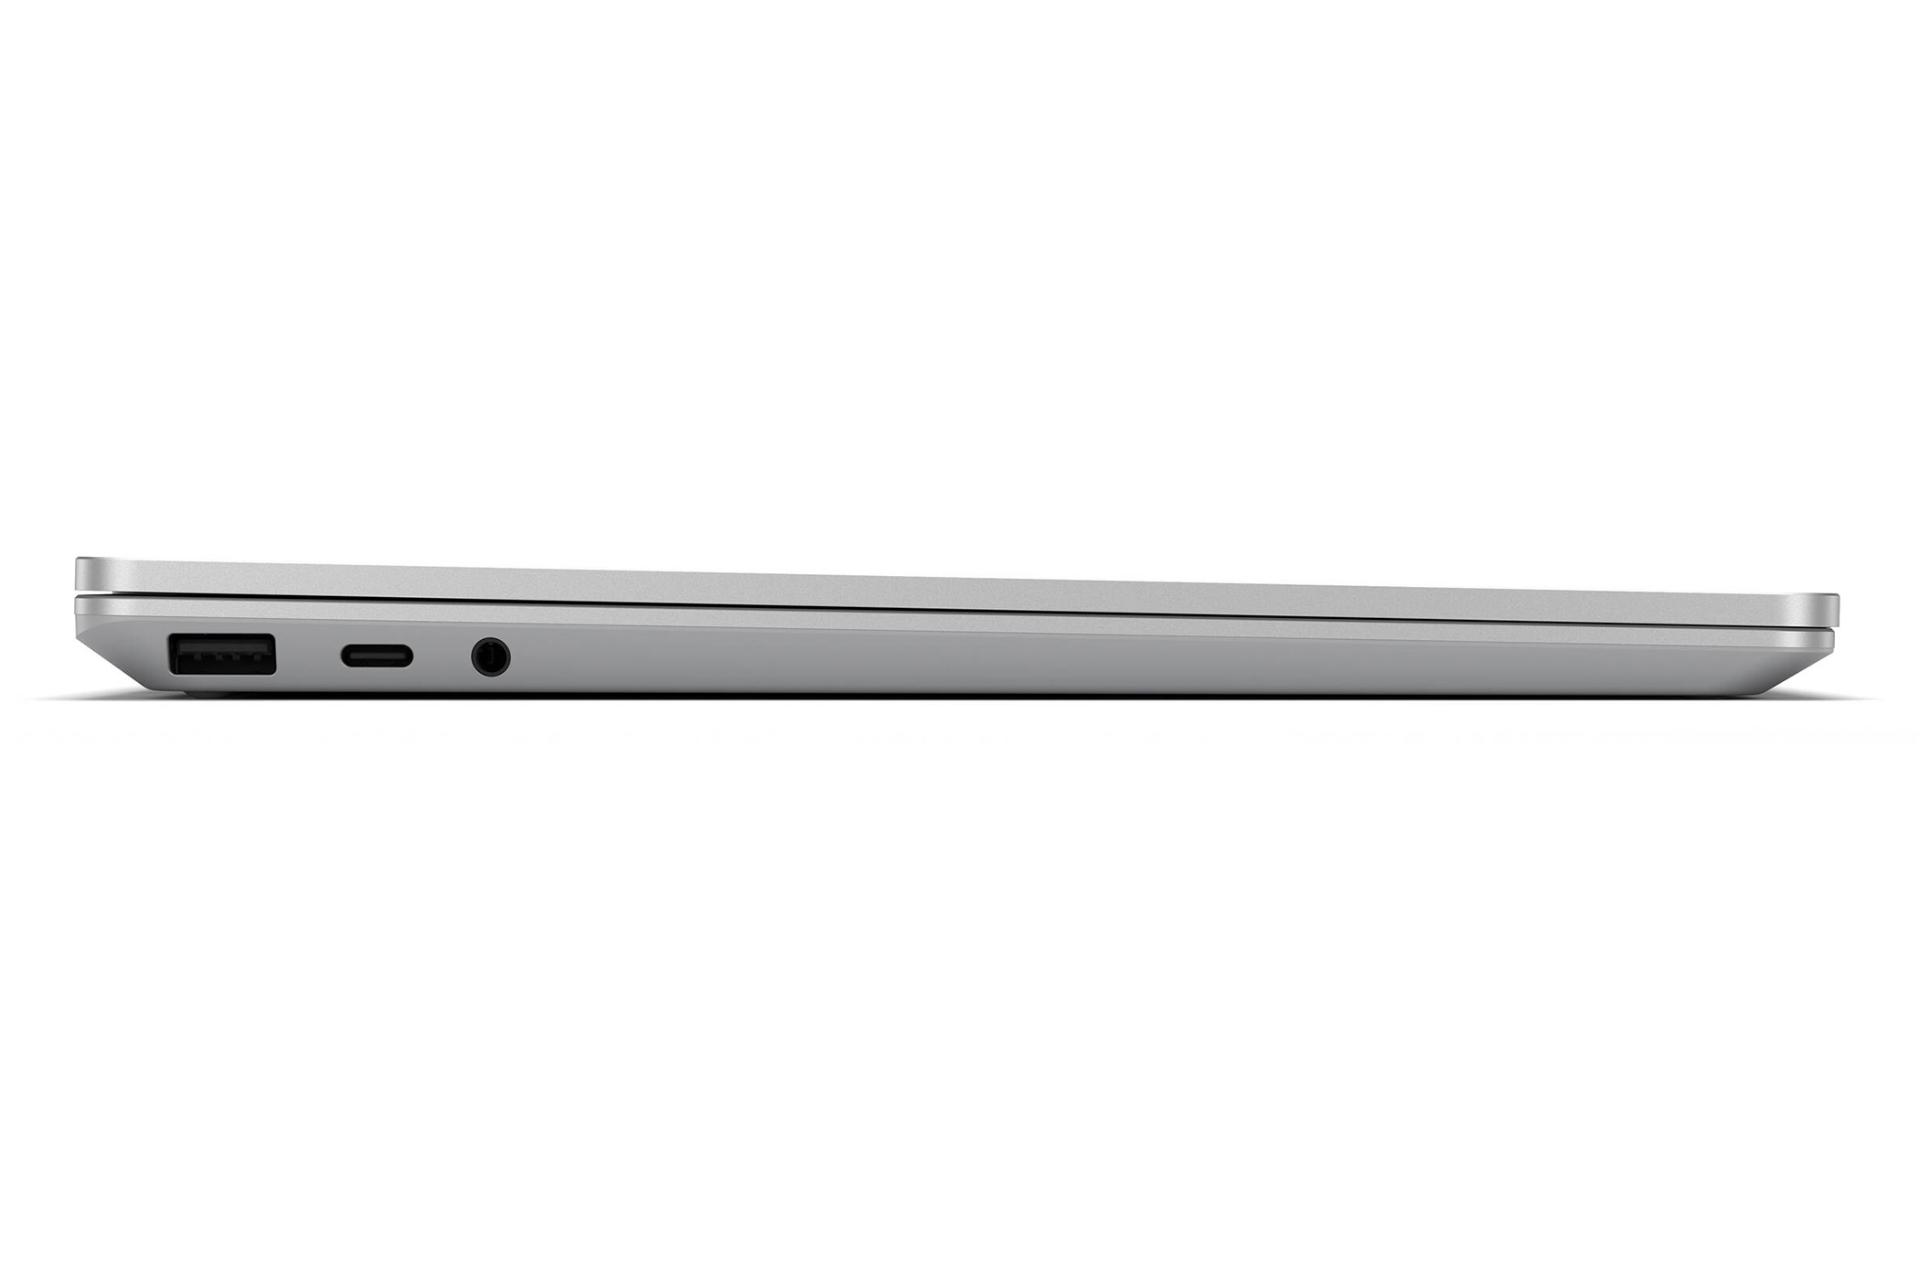 نمای کنار مایکروسافت سرفیس لپ تاپ گو رنگ سیلور در حالت بسته